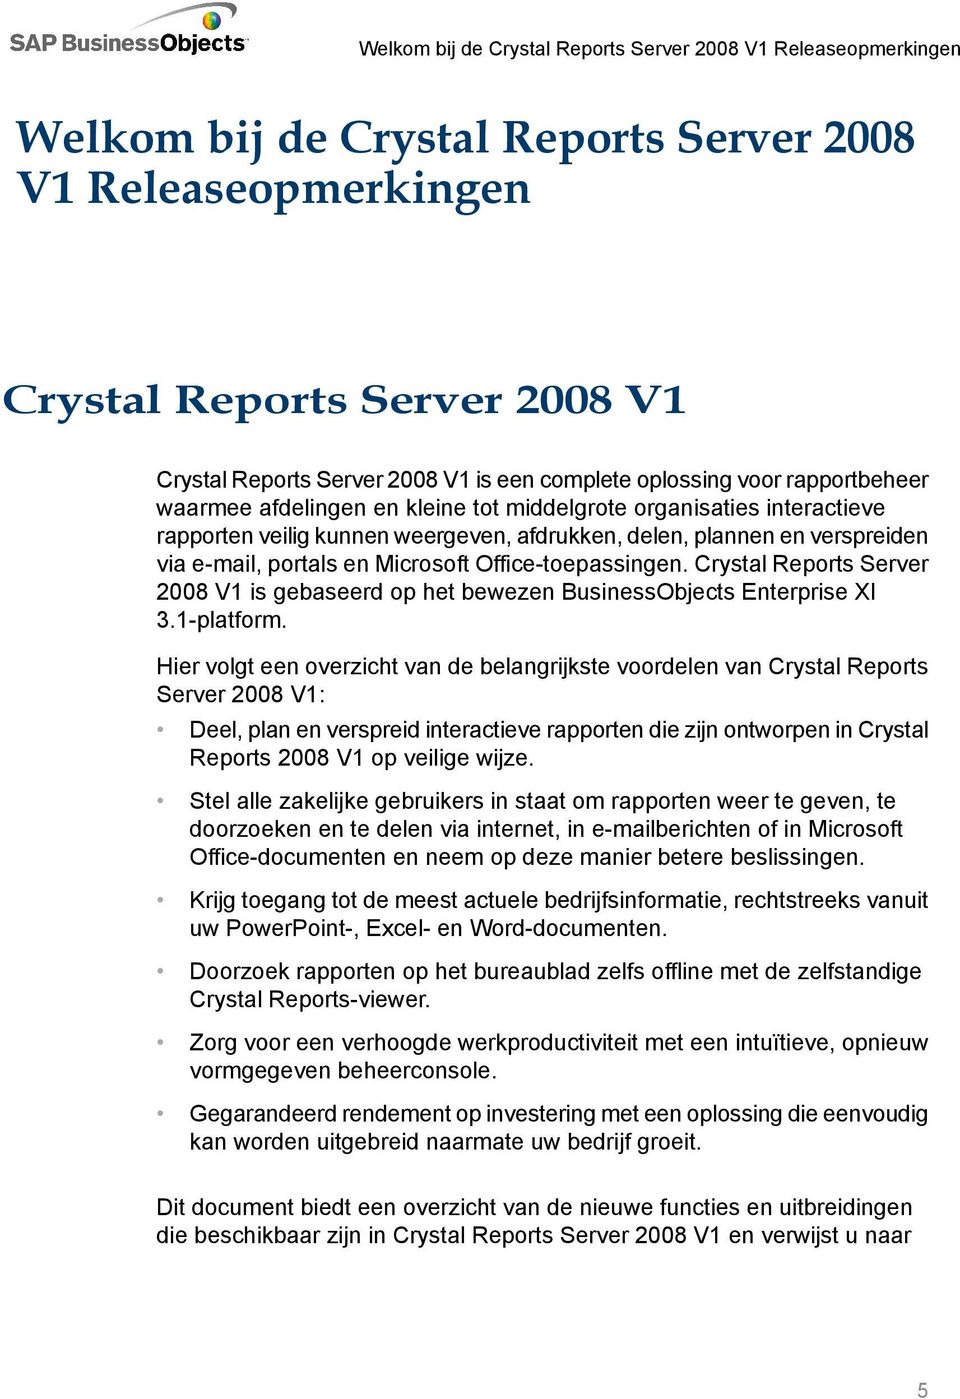 Crystal Reports Server 2008 V1 is gebaseerd op het bewezen BusinessObjects Enterprise XI 3.1-platform.